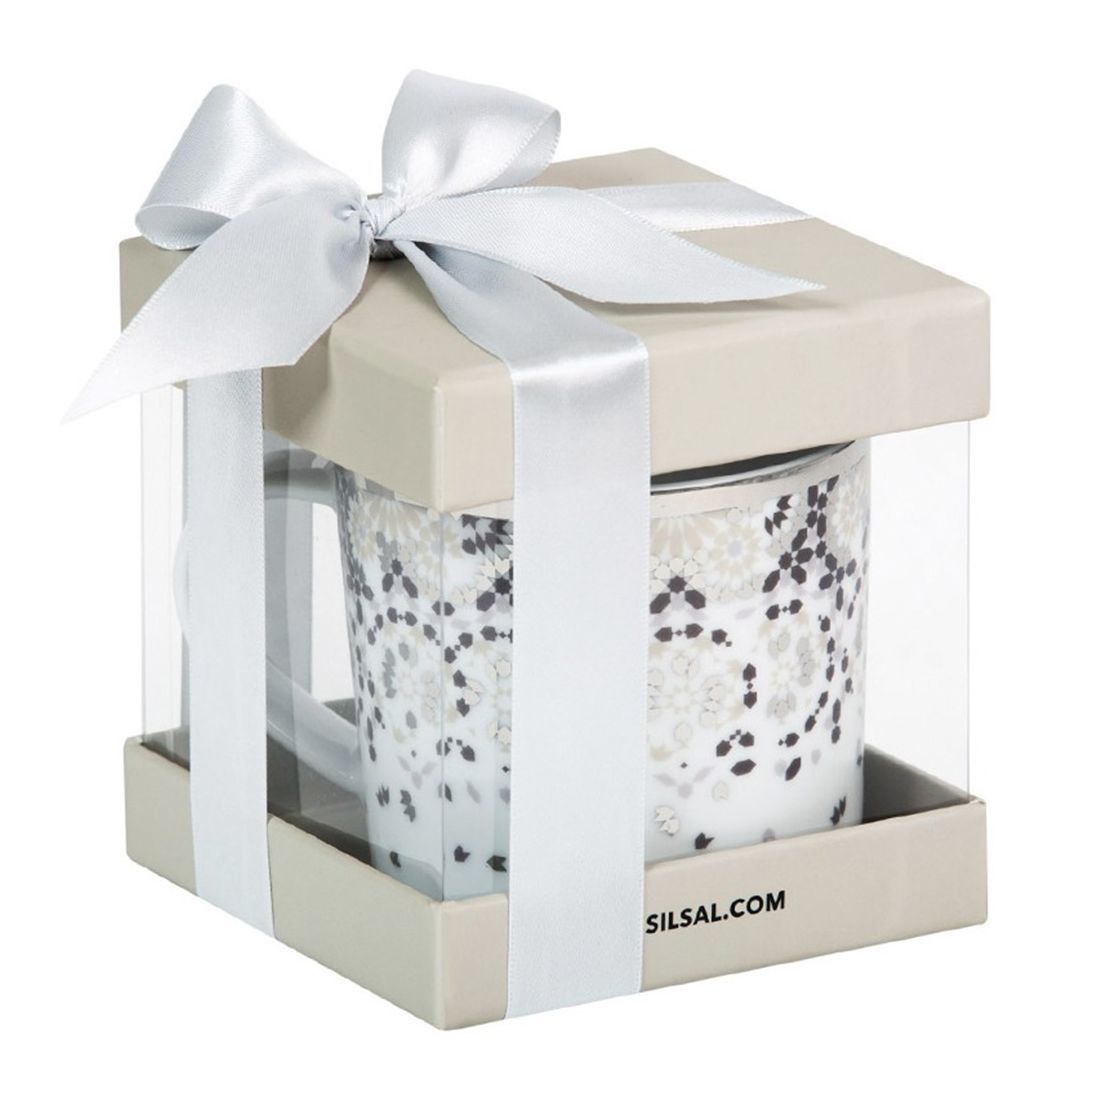 Silsal Silver Mirrors Gift Box Mug